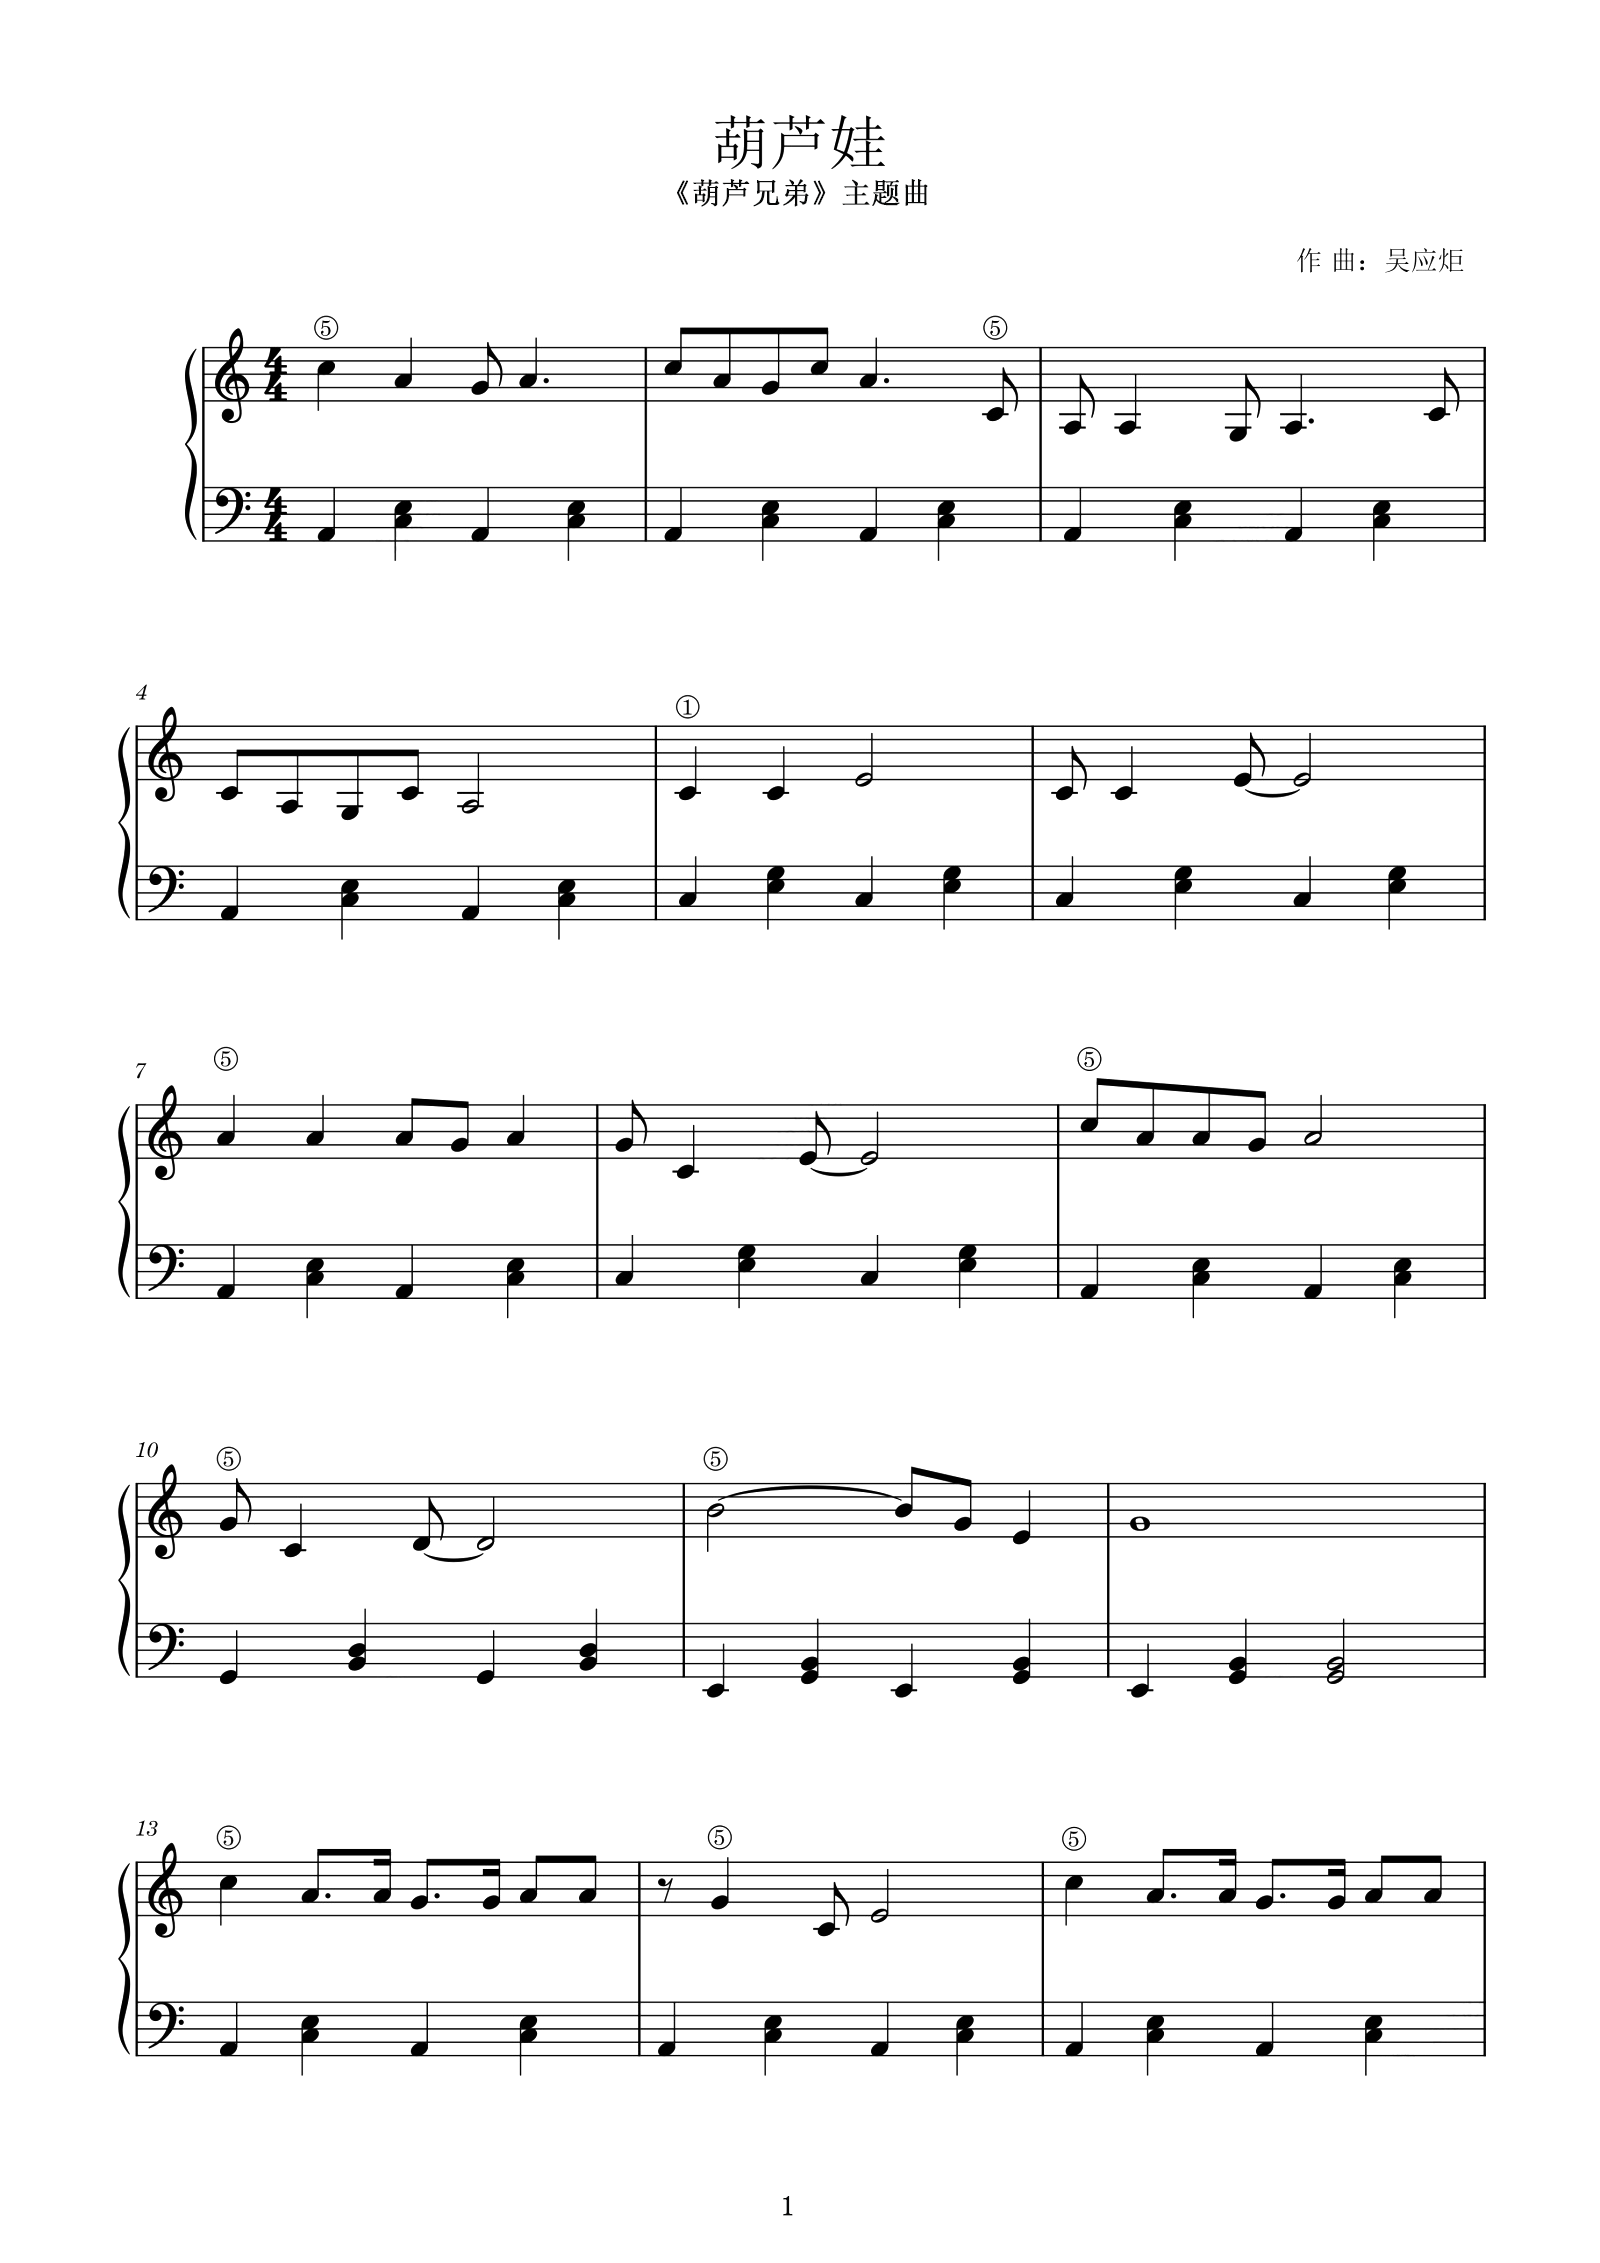 小小葫芦娃五线谱预览1-钢琴谱文件（五线谱、双手简谱、数字谱、Midi、PDF）免费下载